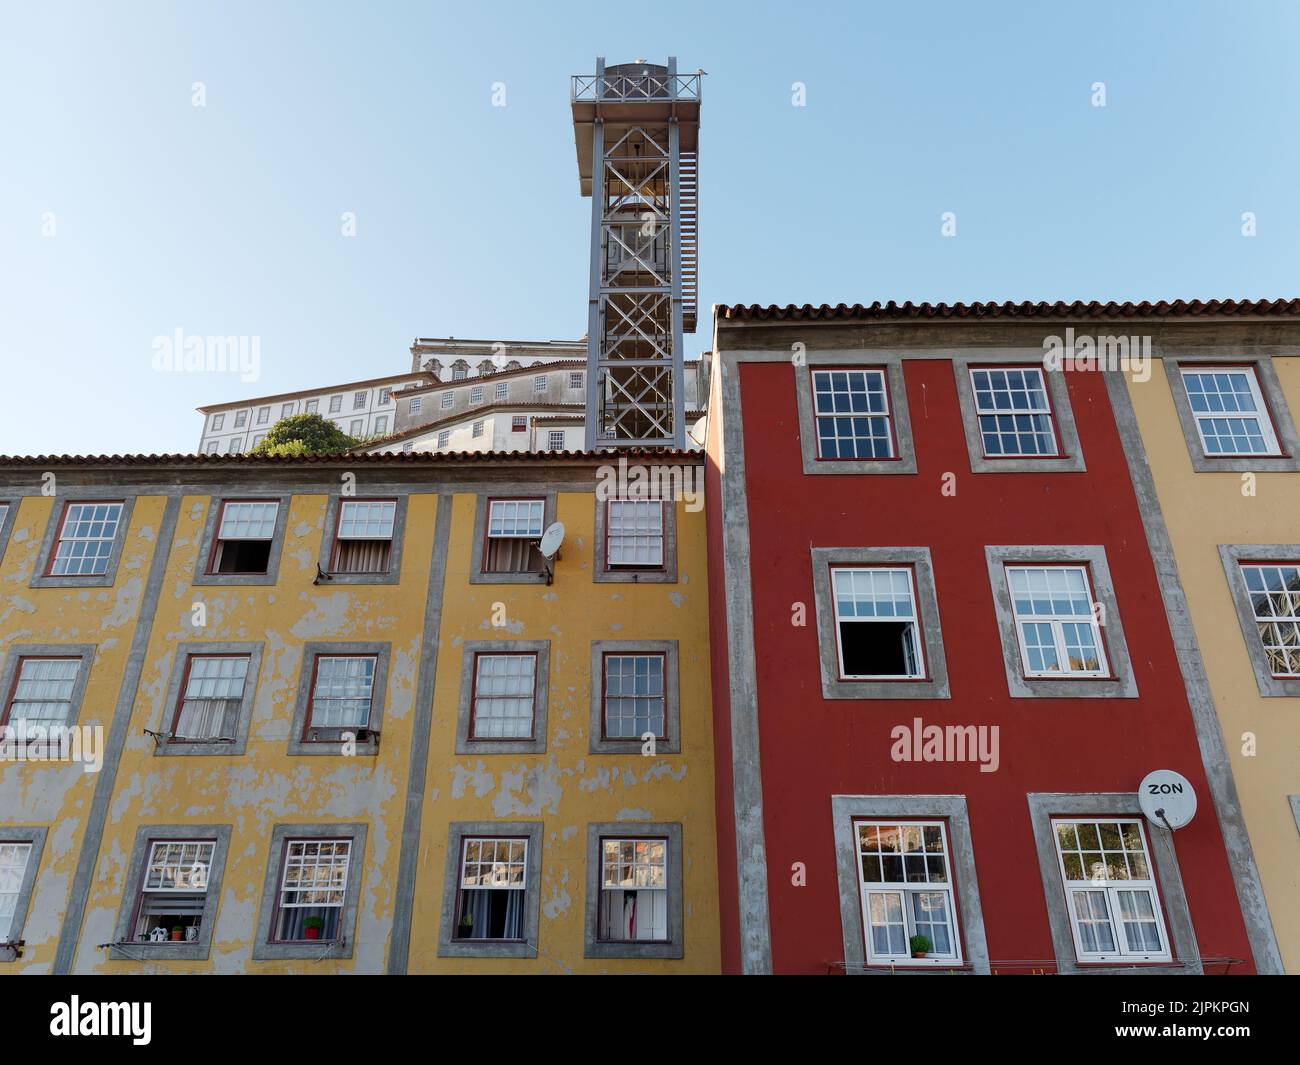 Propriétés colorées rouges et jaunes dans le quartier Ribeira aka Riverside de Porto, Portugal Banque D'Images